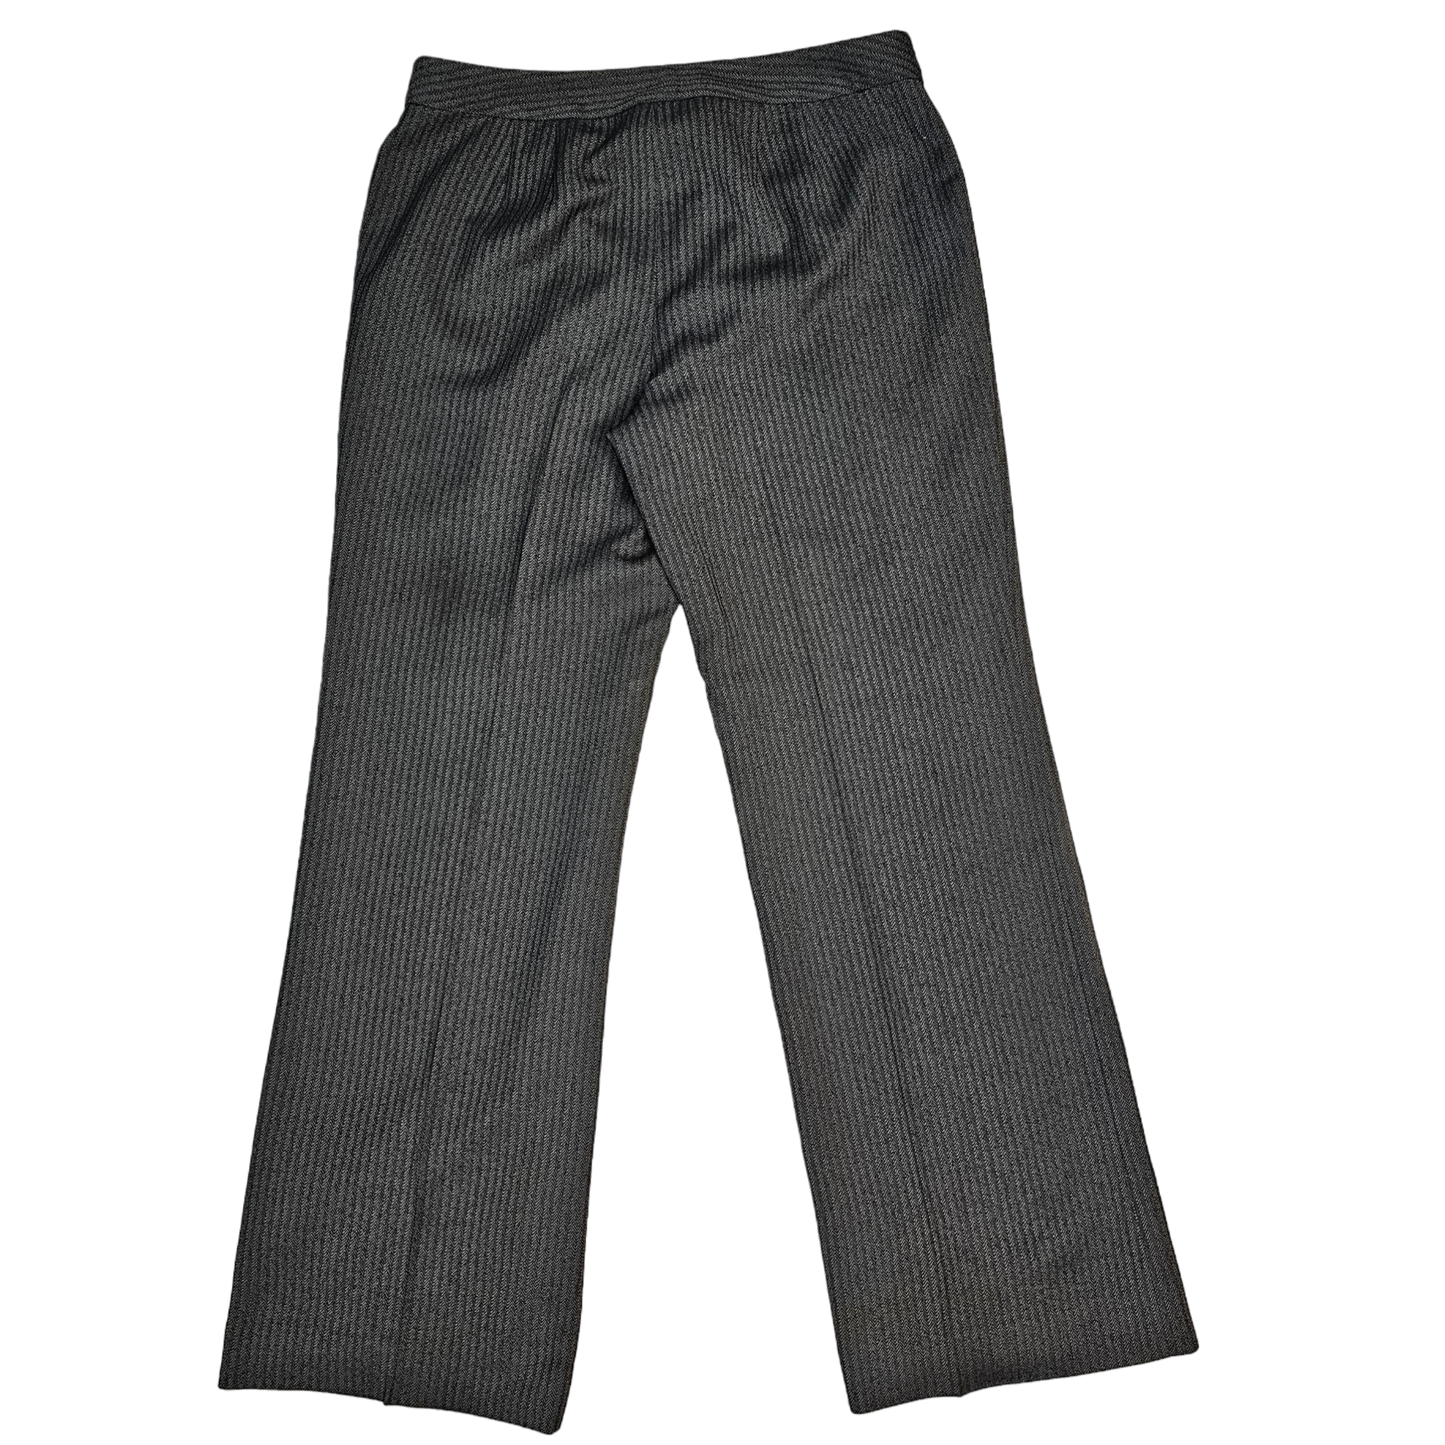 Pants Work/dress By Ann Taylor O  Size: 6petite